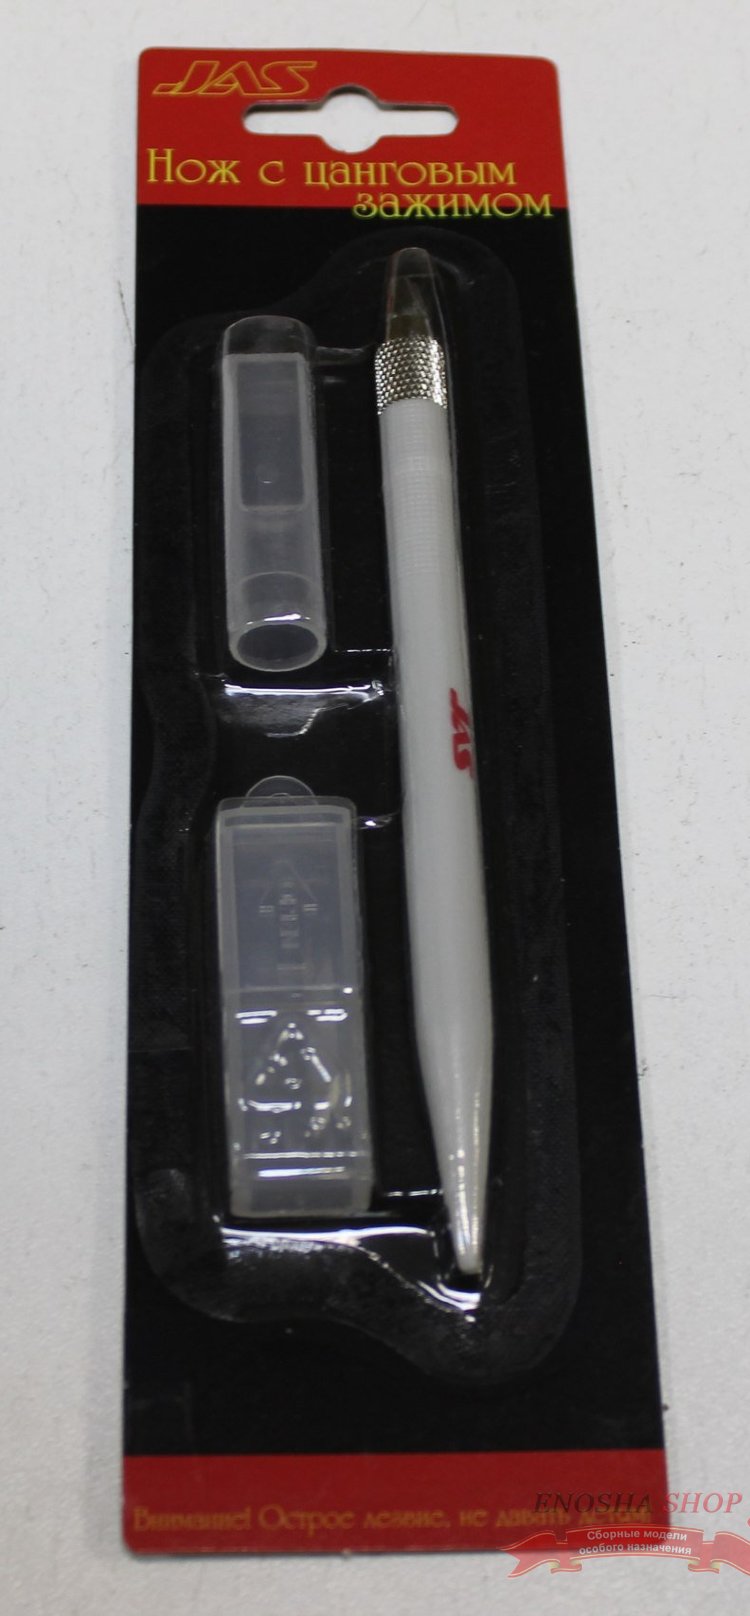 Нож с цанговым зажимом,  пластиковая ручка купить в Москве